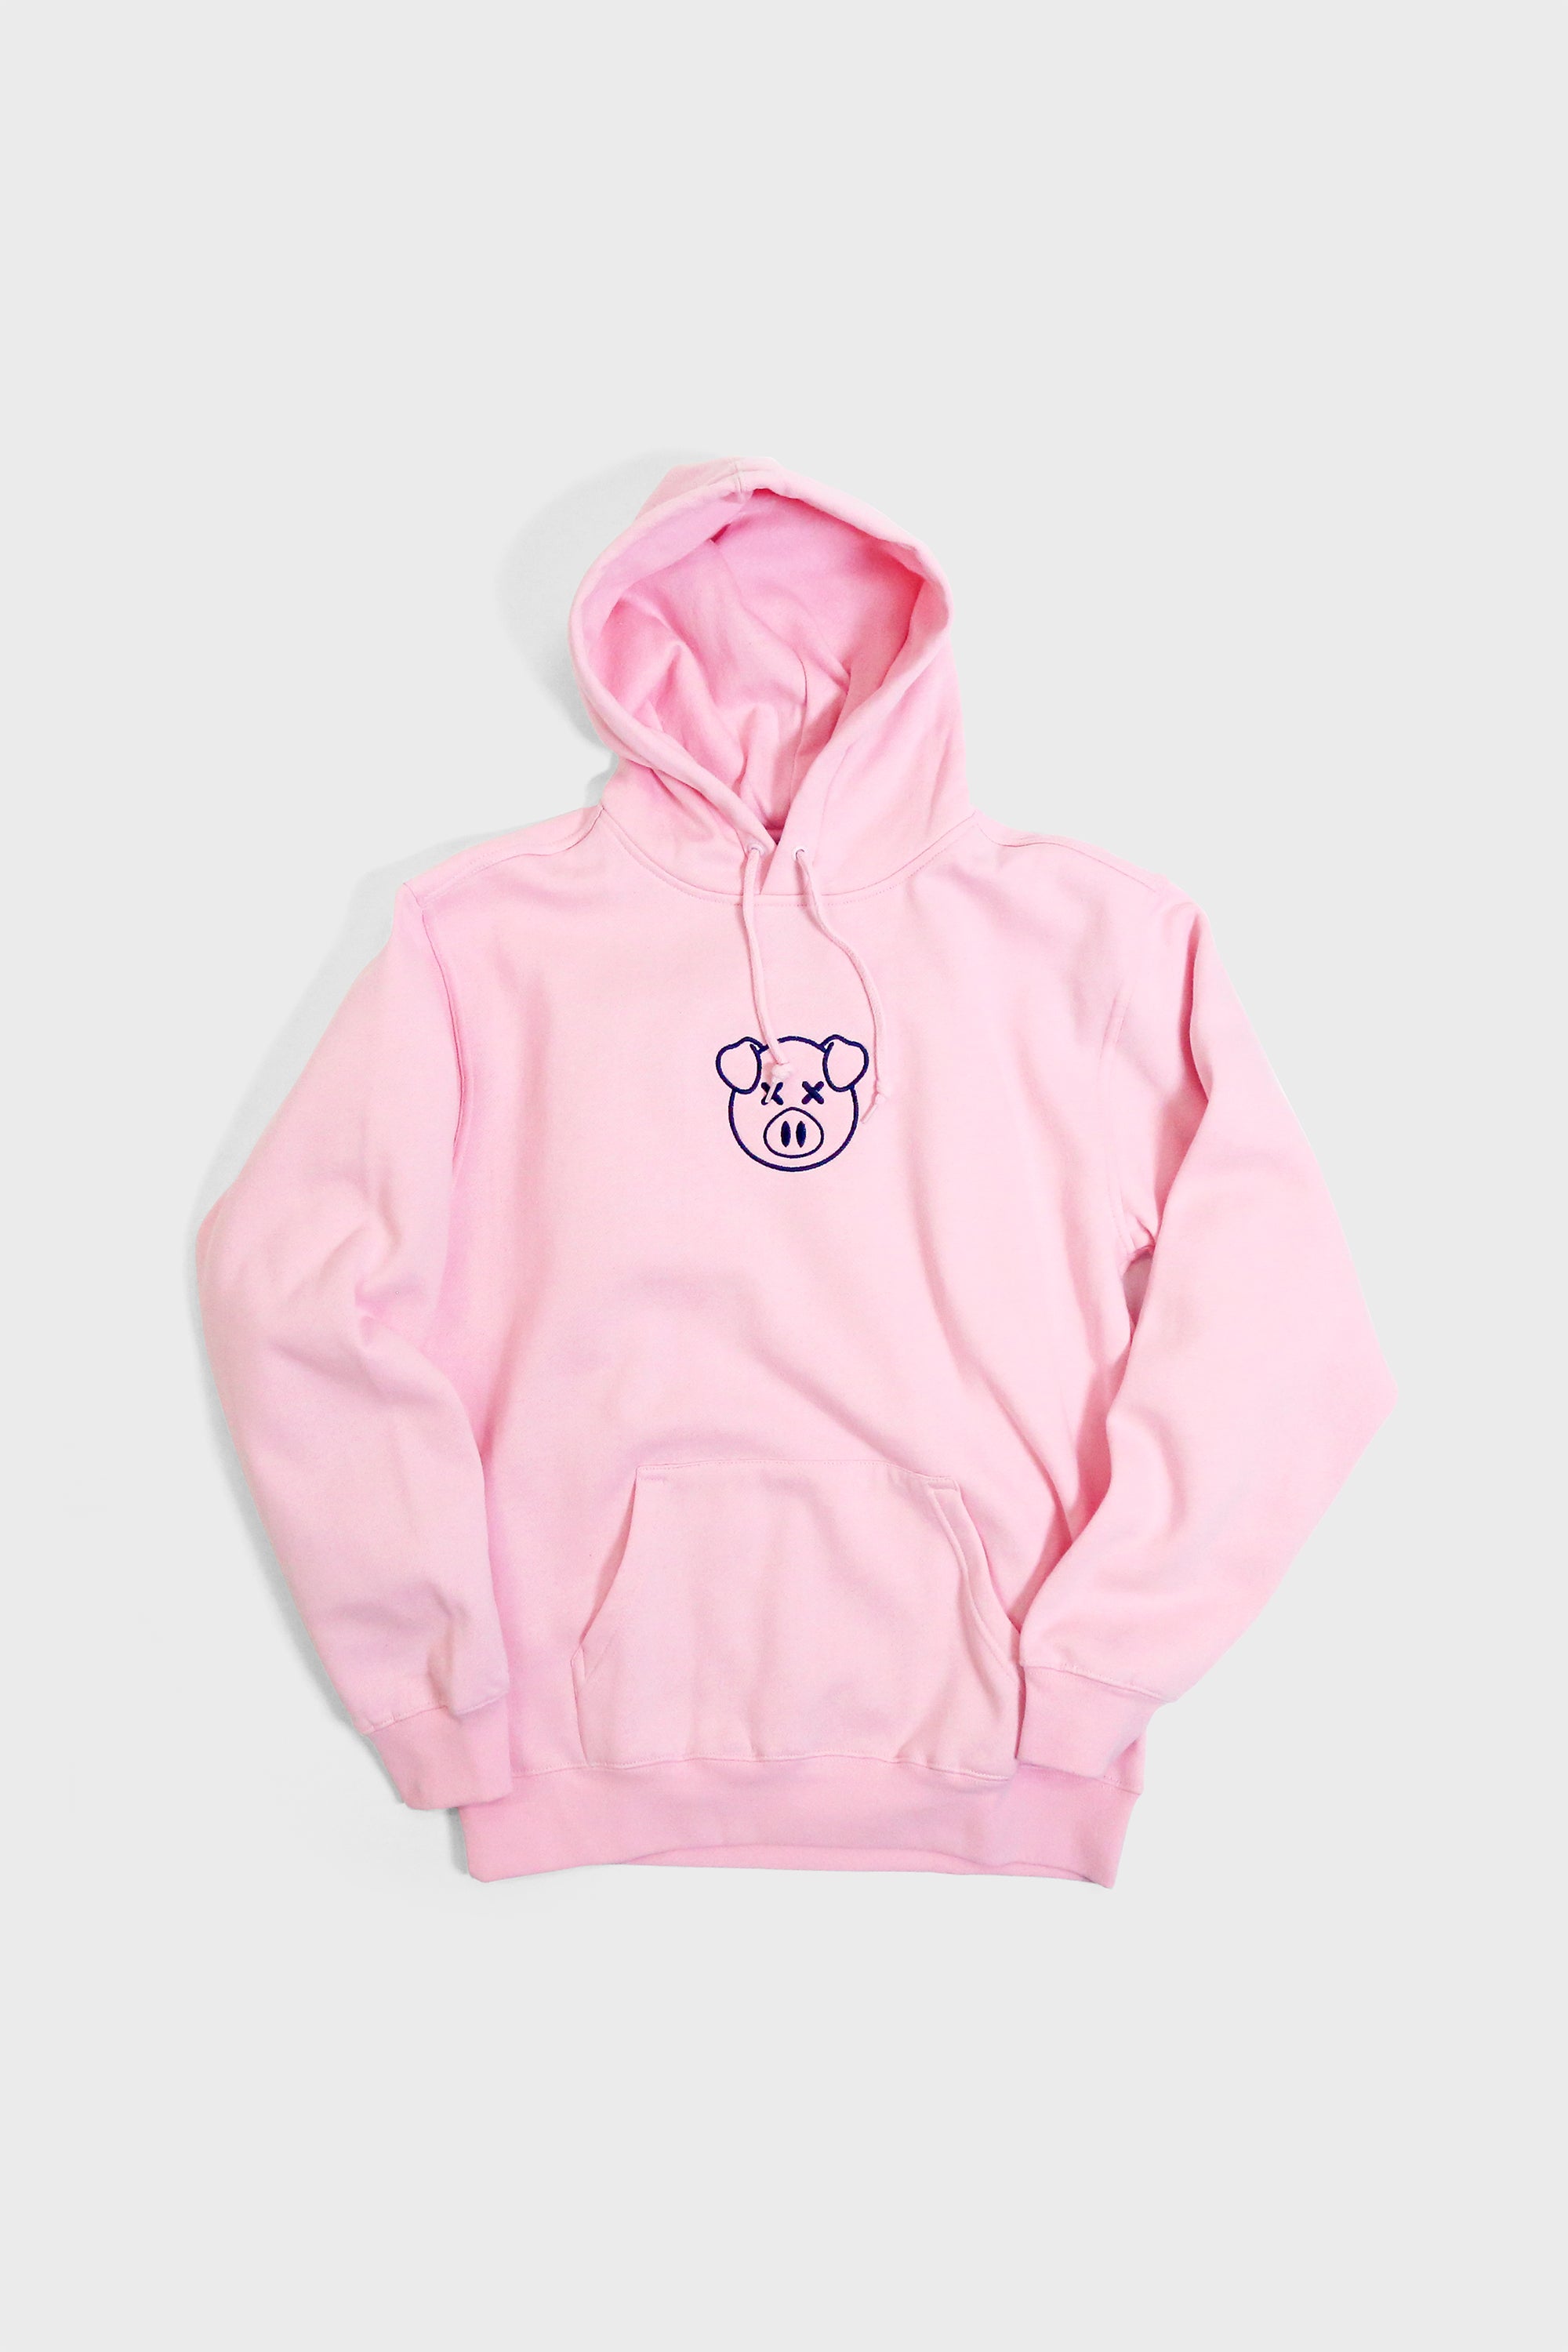 cheap womens hoodies online